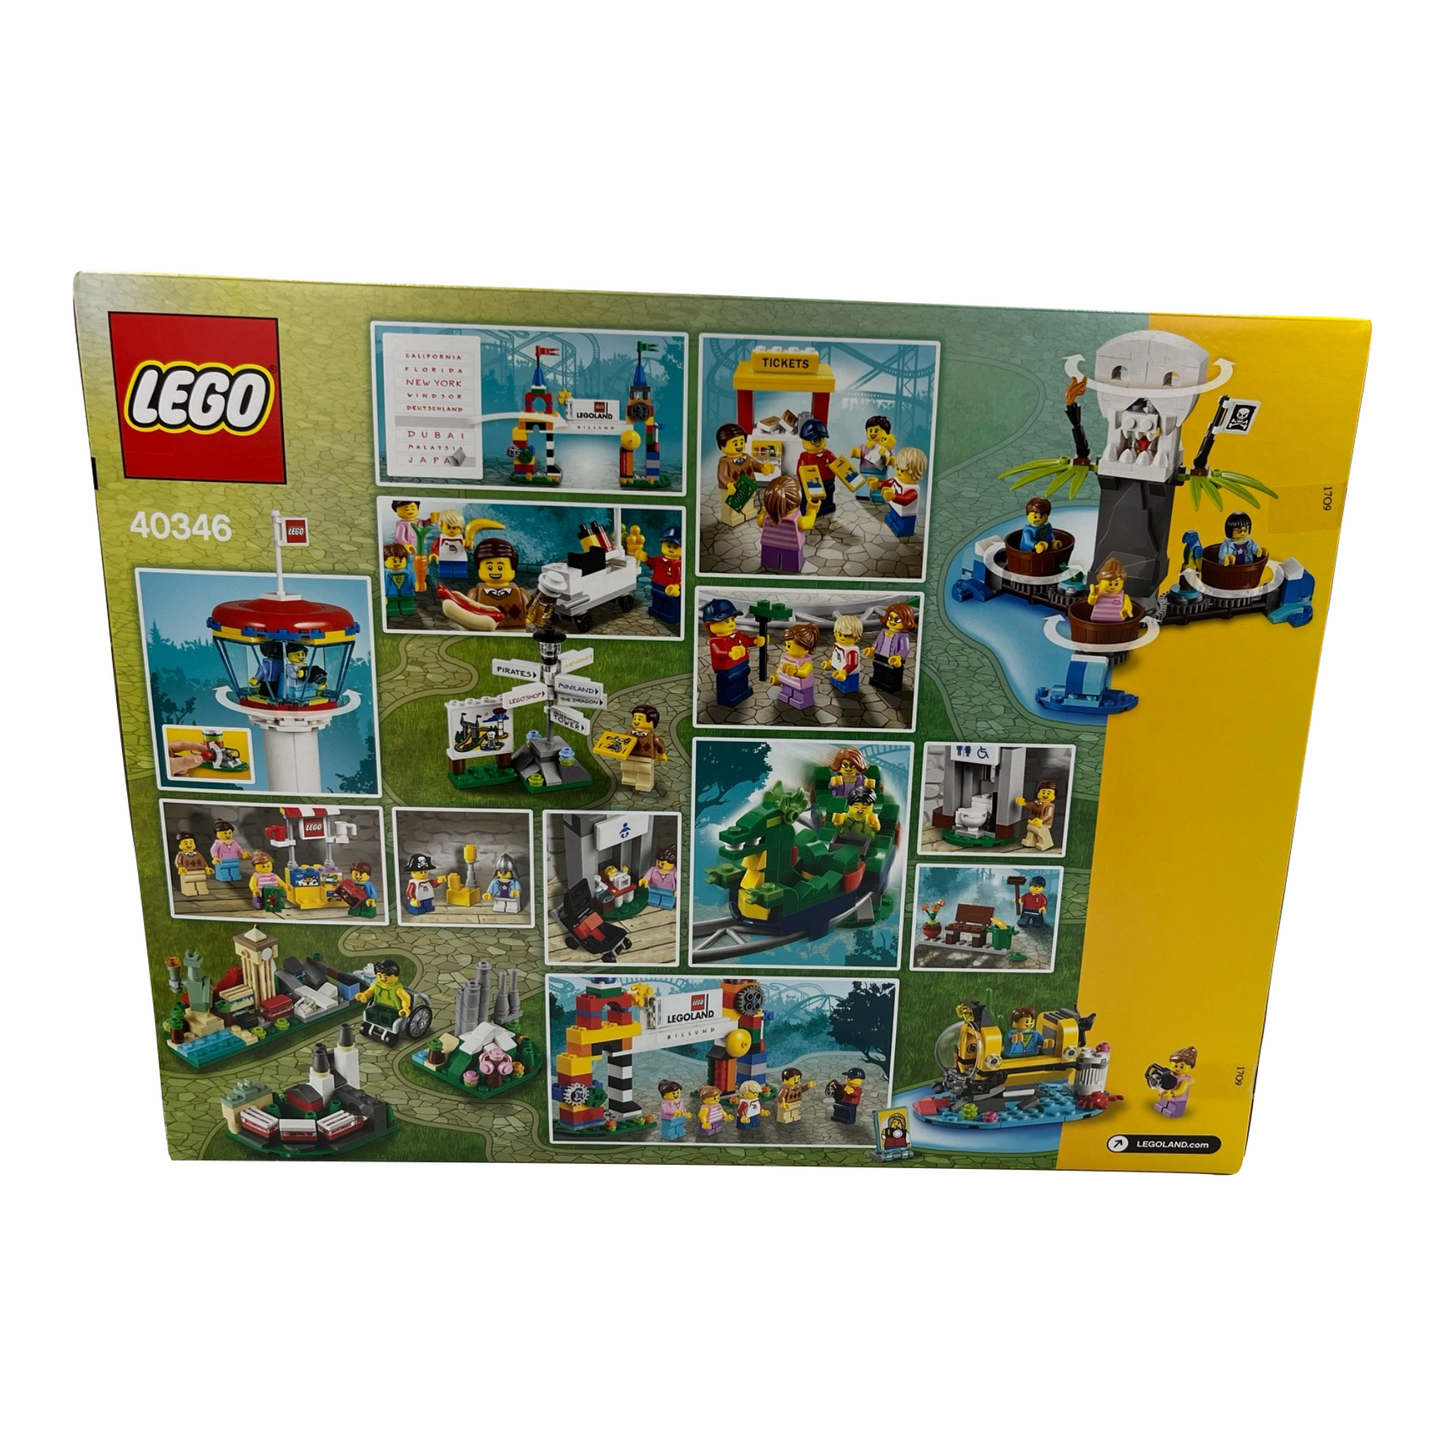 Lego 40346 - Promotional: Legoland Park